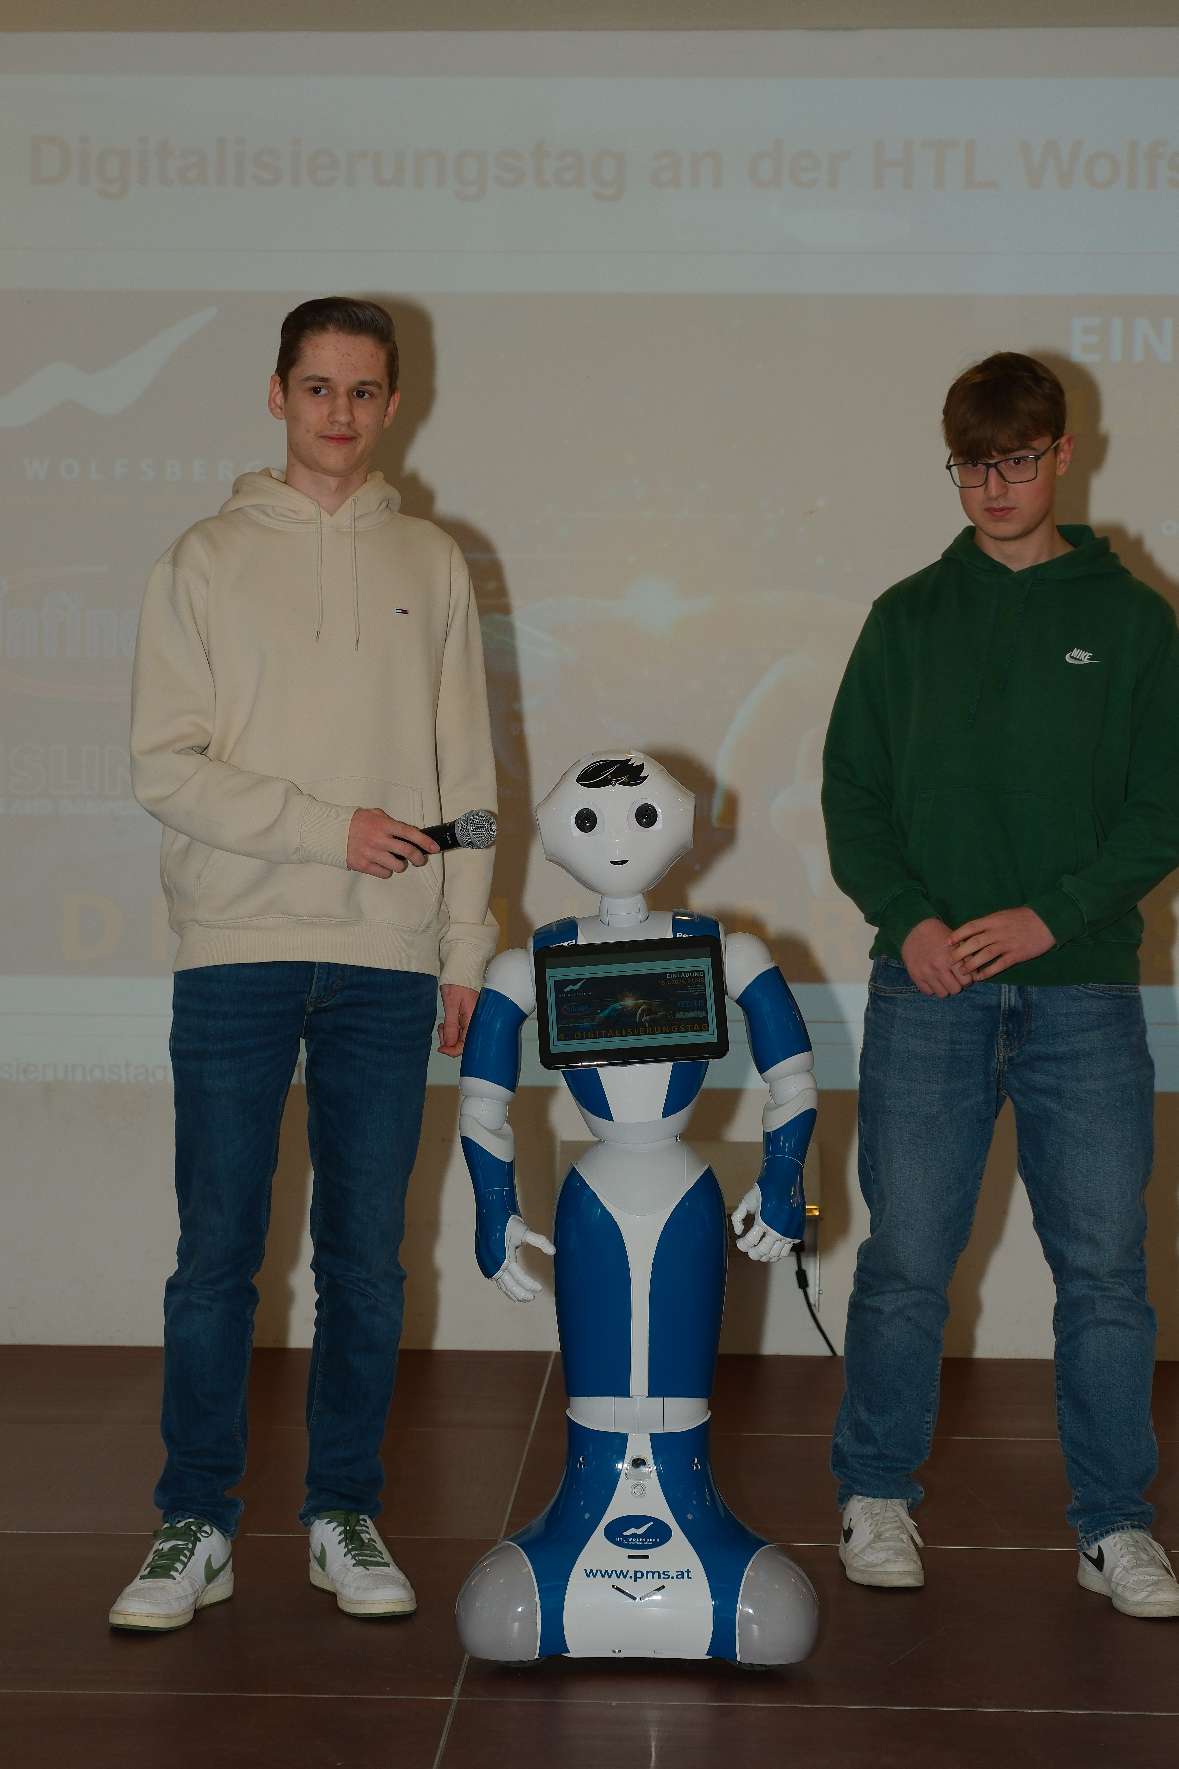 Begrüßungsinterview mit dem Roboter „Pepper“ mit Stefan Hatzenbichler & Felix Scheiber (4BHWII)